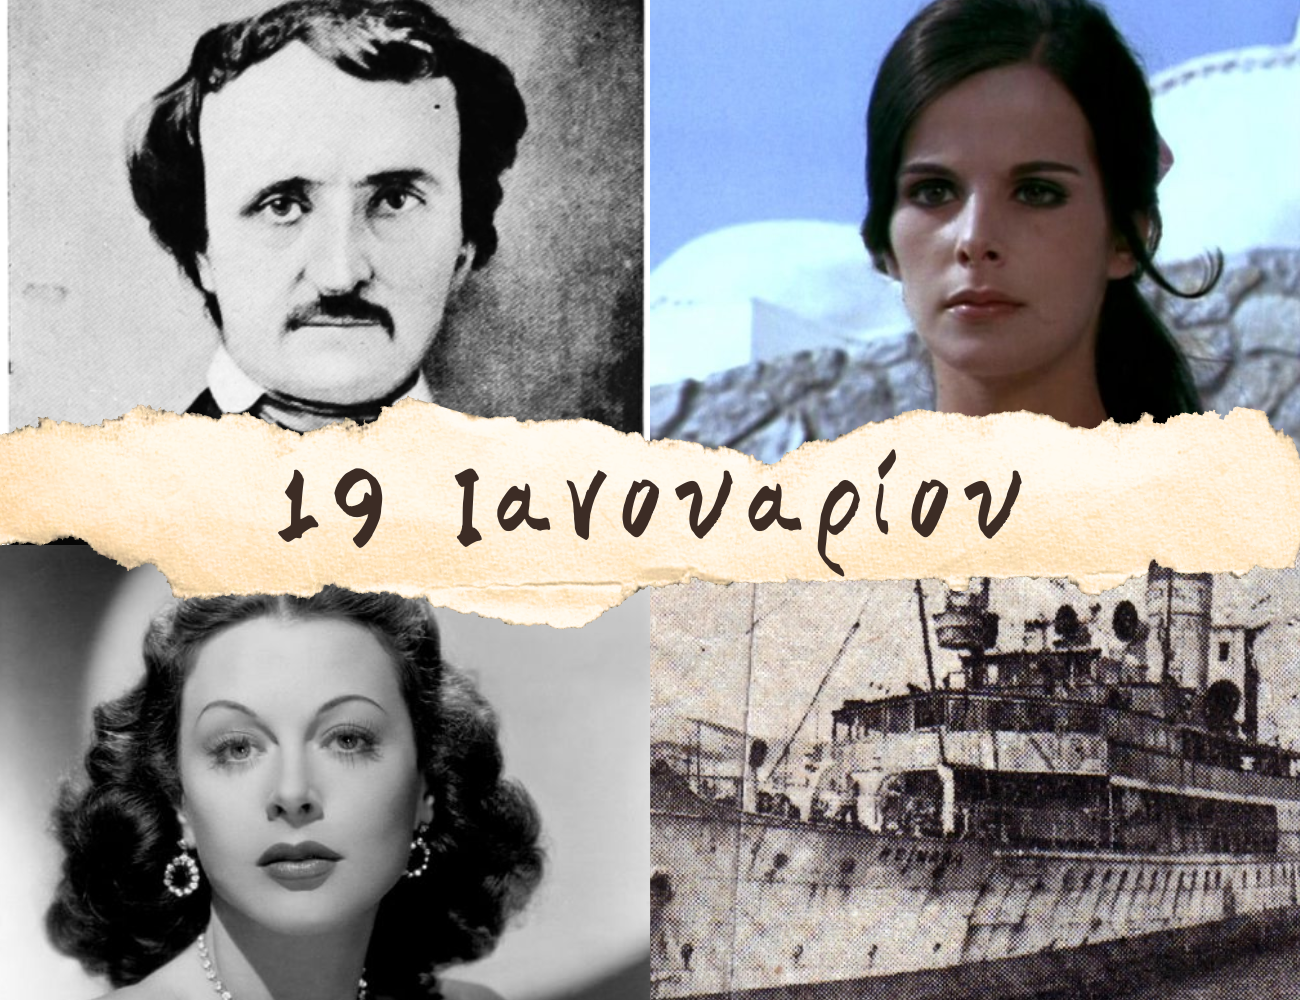 10 γεγονότα που συνέβησαν σαν σήμερα, 19 Ιανουαρίου. Έλενα Ναθαναήλ, Τζάνις Τζόπλιν και το ναυάγιο του “Χειμάρρα”